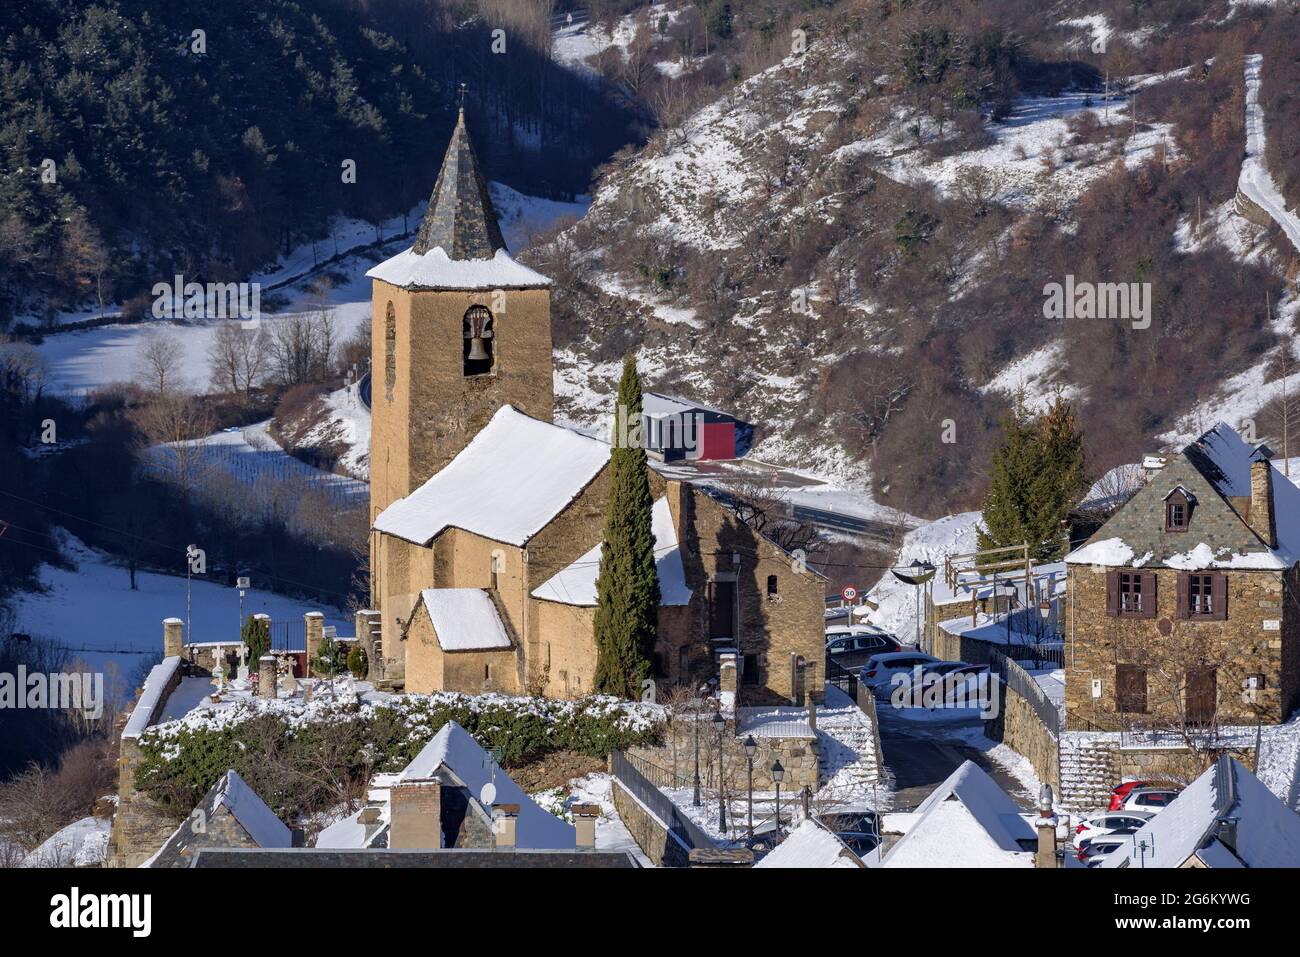 Schneebedecktes Aran-Tal im Winter, vom Dorf Mont. Im Vordergrund, Dorf Betlan (Aran-Tal, Katalonien, Spanien, Pyrenäen) Stockfoto